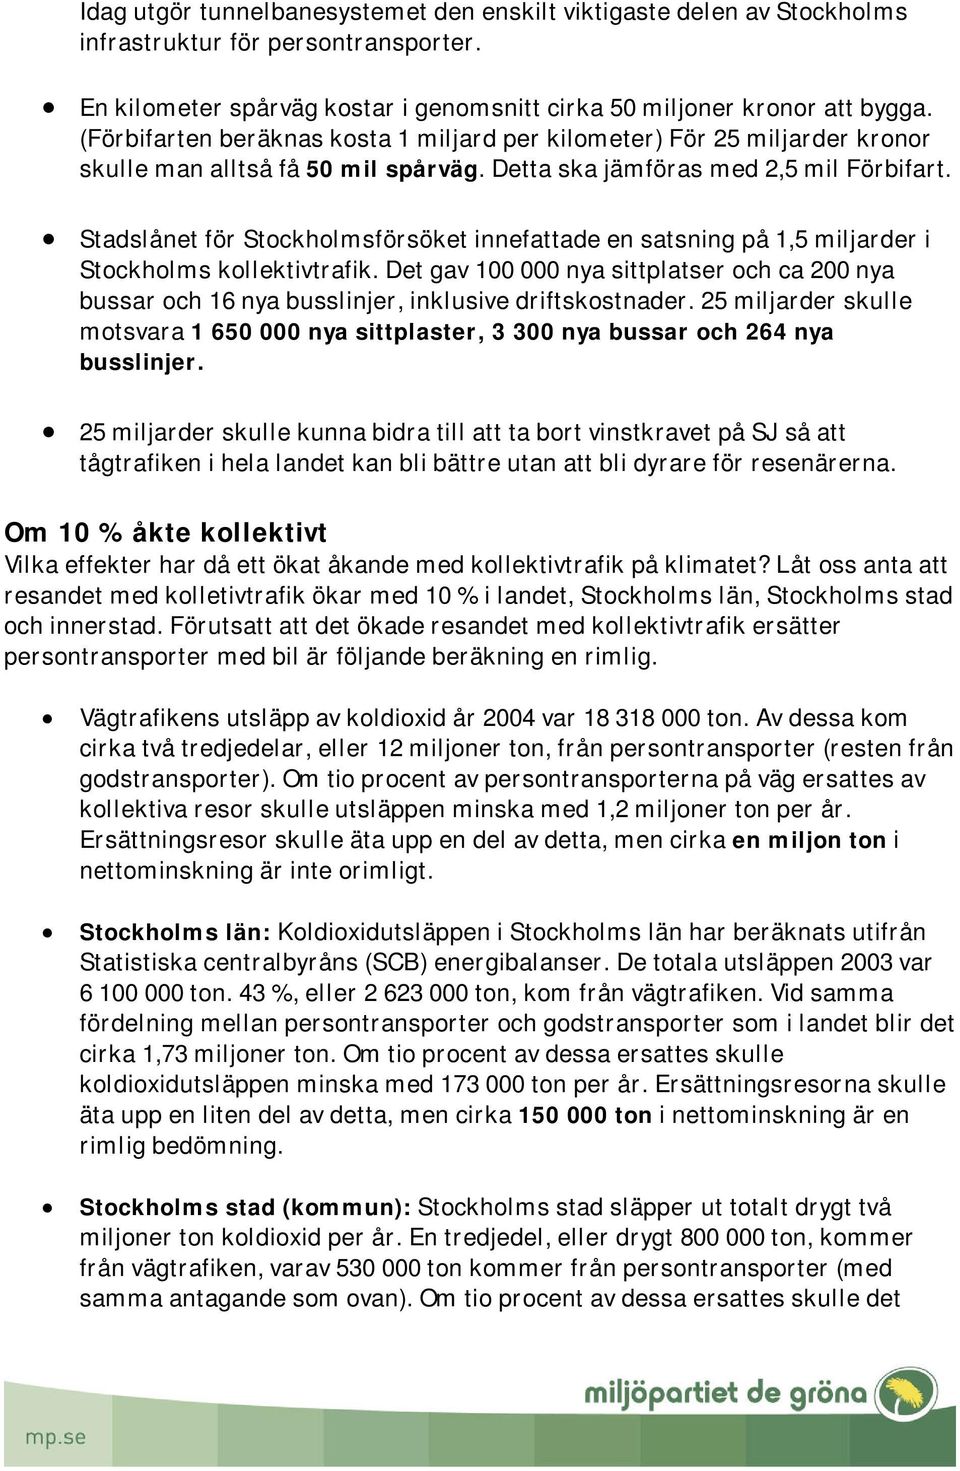 Stadslånet för Stockholmsförsöket innefattade en satsning på 1,5 miljarder i Stockholms kollektivtrafik.